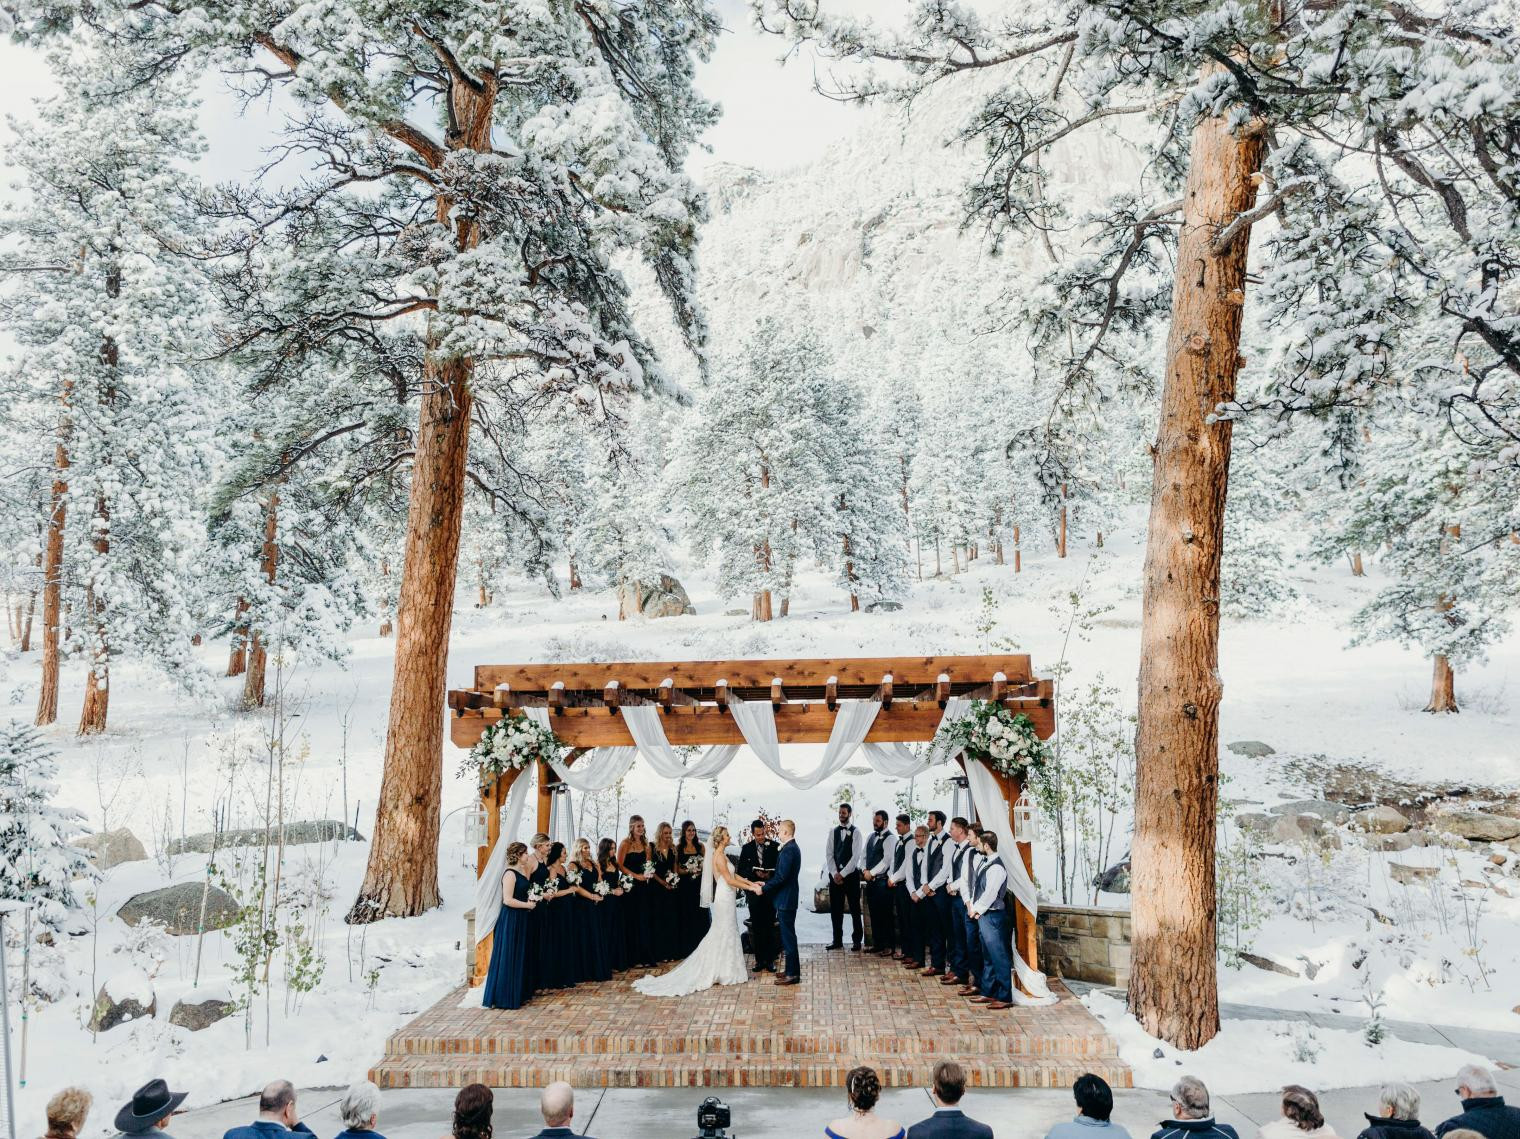 Wedding Venues In Colorado
 The Most Breathtaking Wedding Venues in Colorado